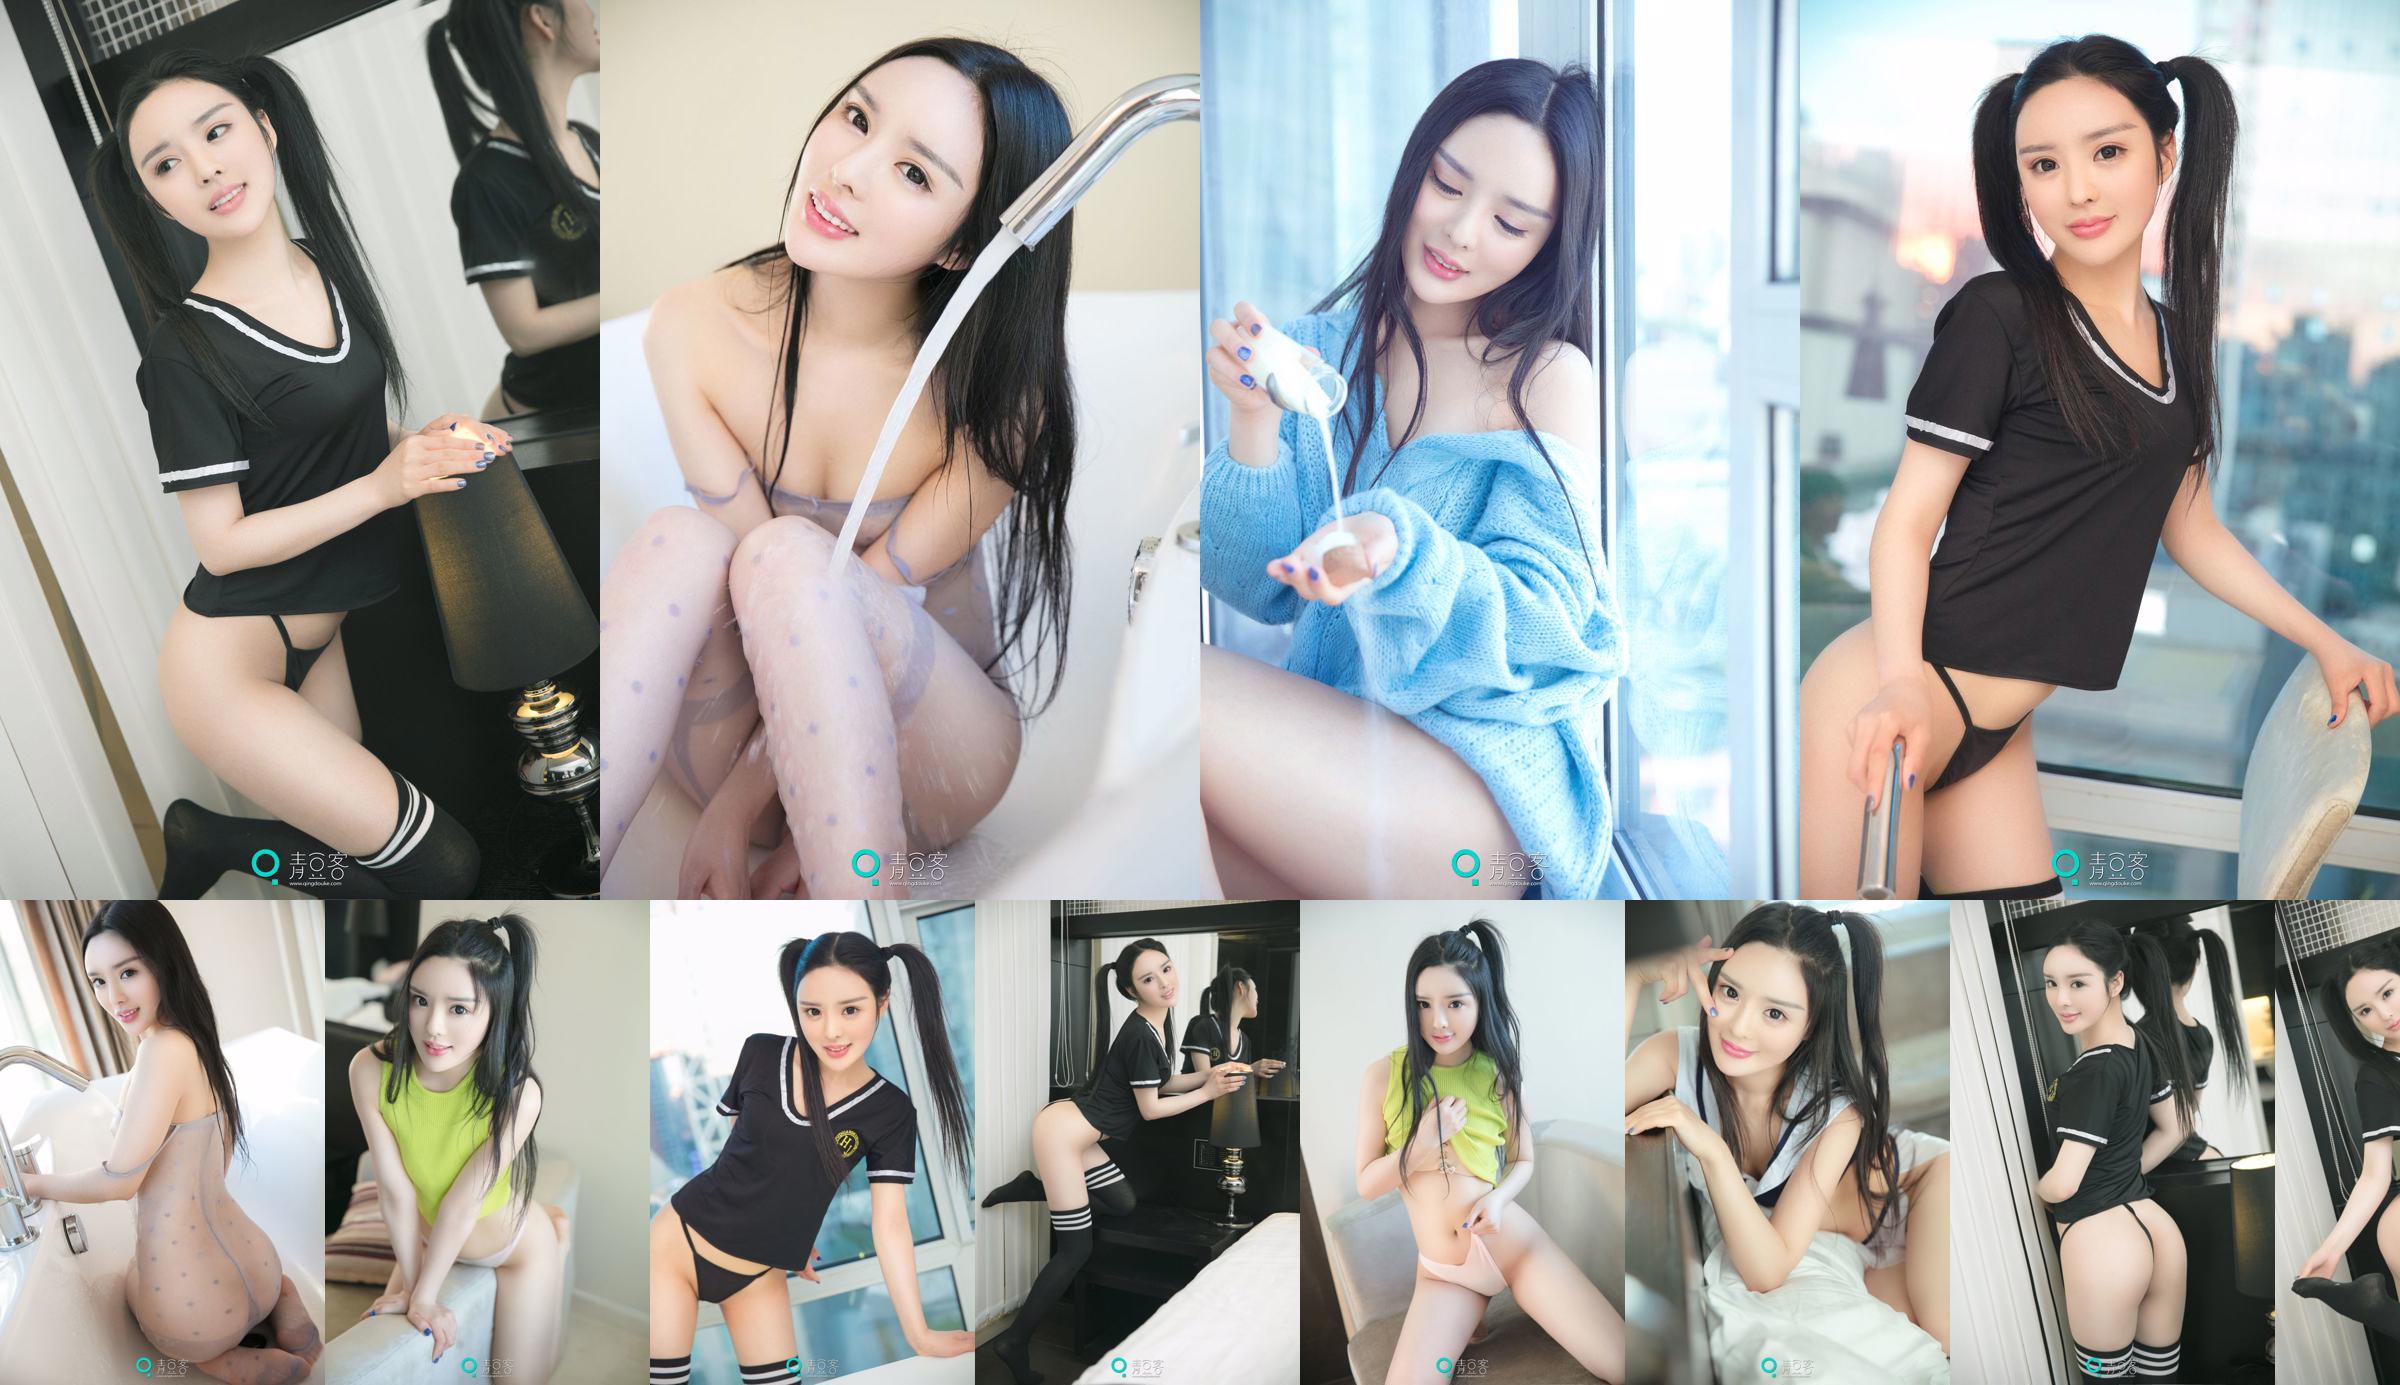 Xiao Di "Sexy Sweater + Uniform" [Qing Dou Ke] No.f5920a Page 1